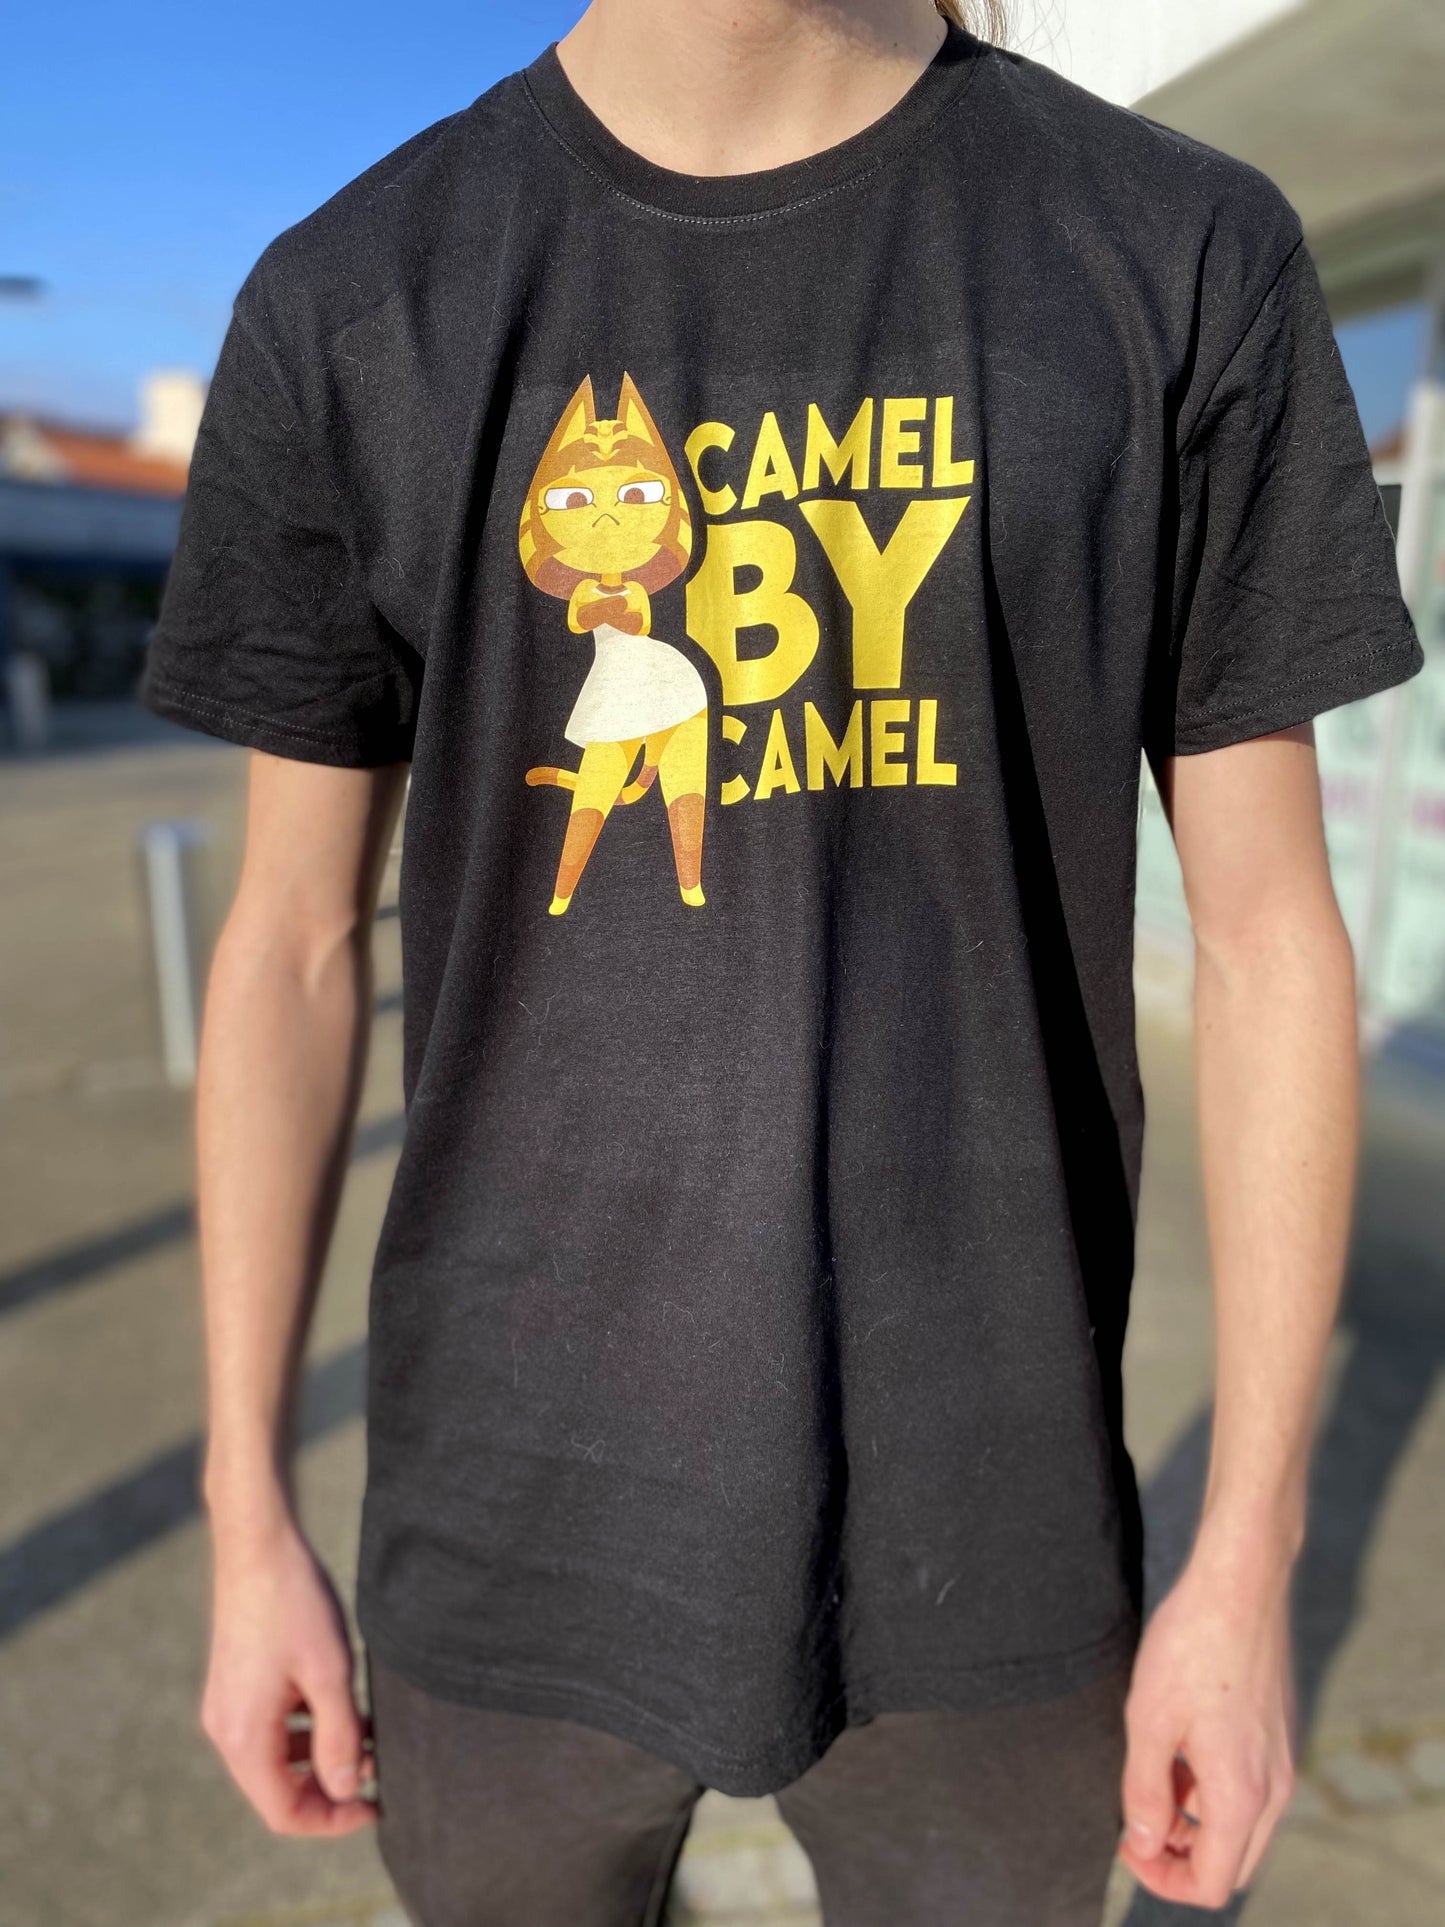 T-shirt noir Ankha Camel by Camel